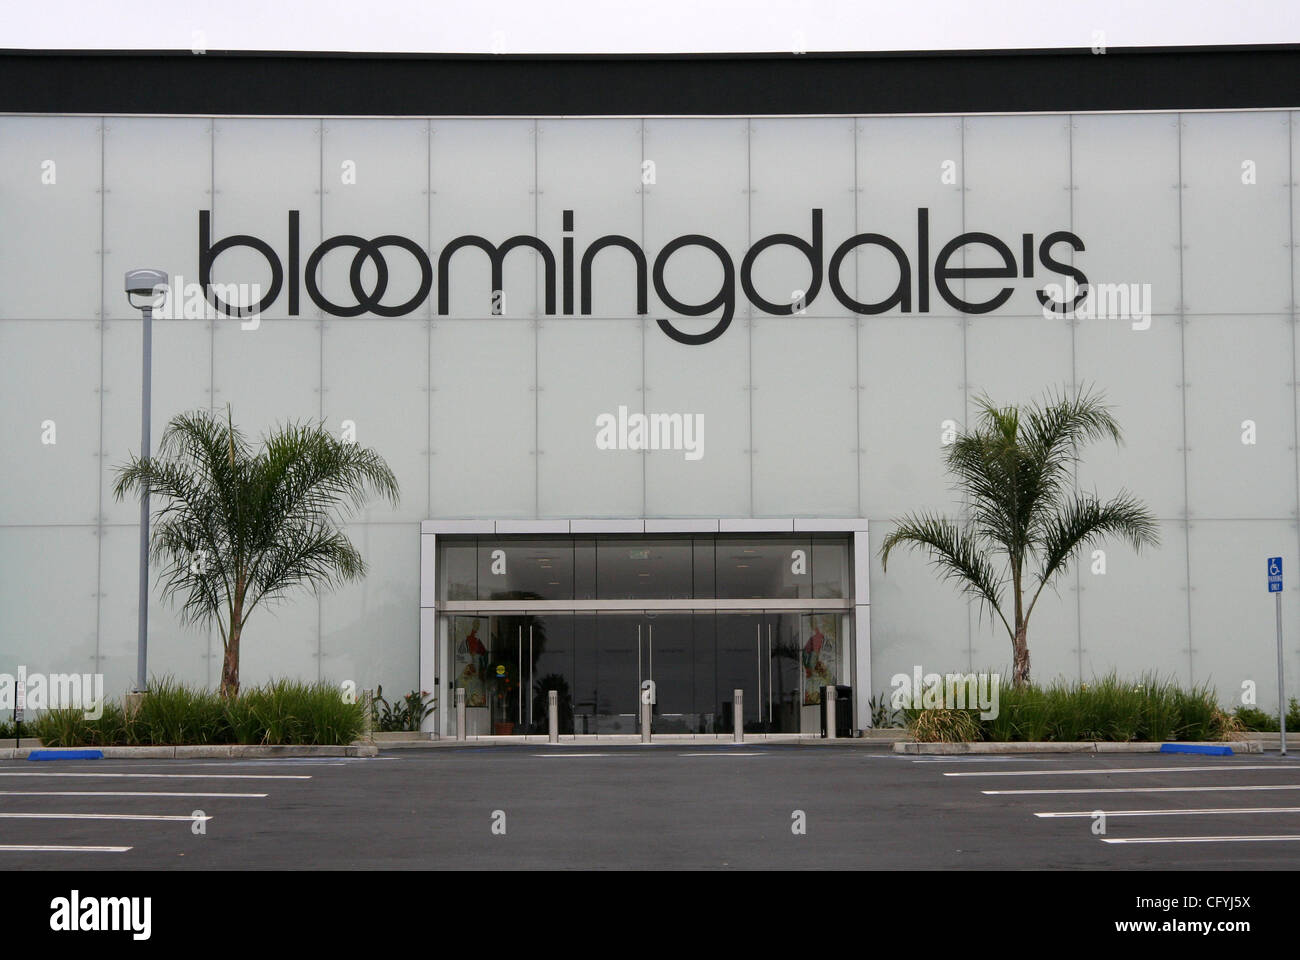 20. Mai 2007 - Costa Mesa, CA, USA - Bloomingdales ist eine Kette von gehobenen amerikanischen Kaufhäusern im Besitz von Federated Department Stores, ist auch die Muttergesellschaft von Macy's. Bloomingdale's hat 36 Filialen bundesweit, mit einem jährlichen Umsatz von 1,9 Milliarden US-Dollar.  Im Bild: Bloomingdales speichern Stockfoto